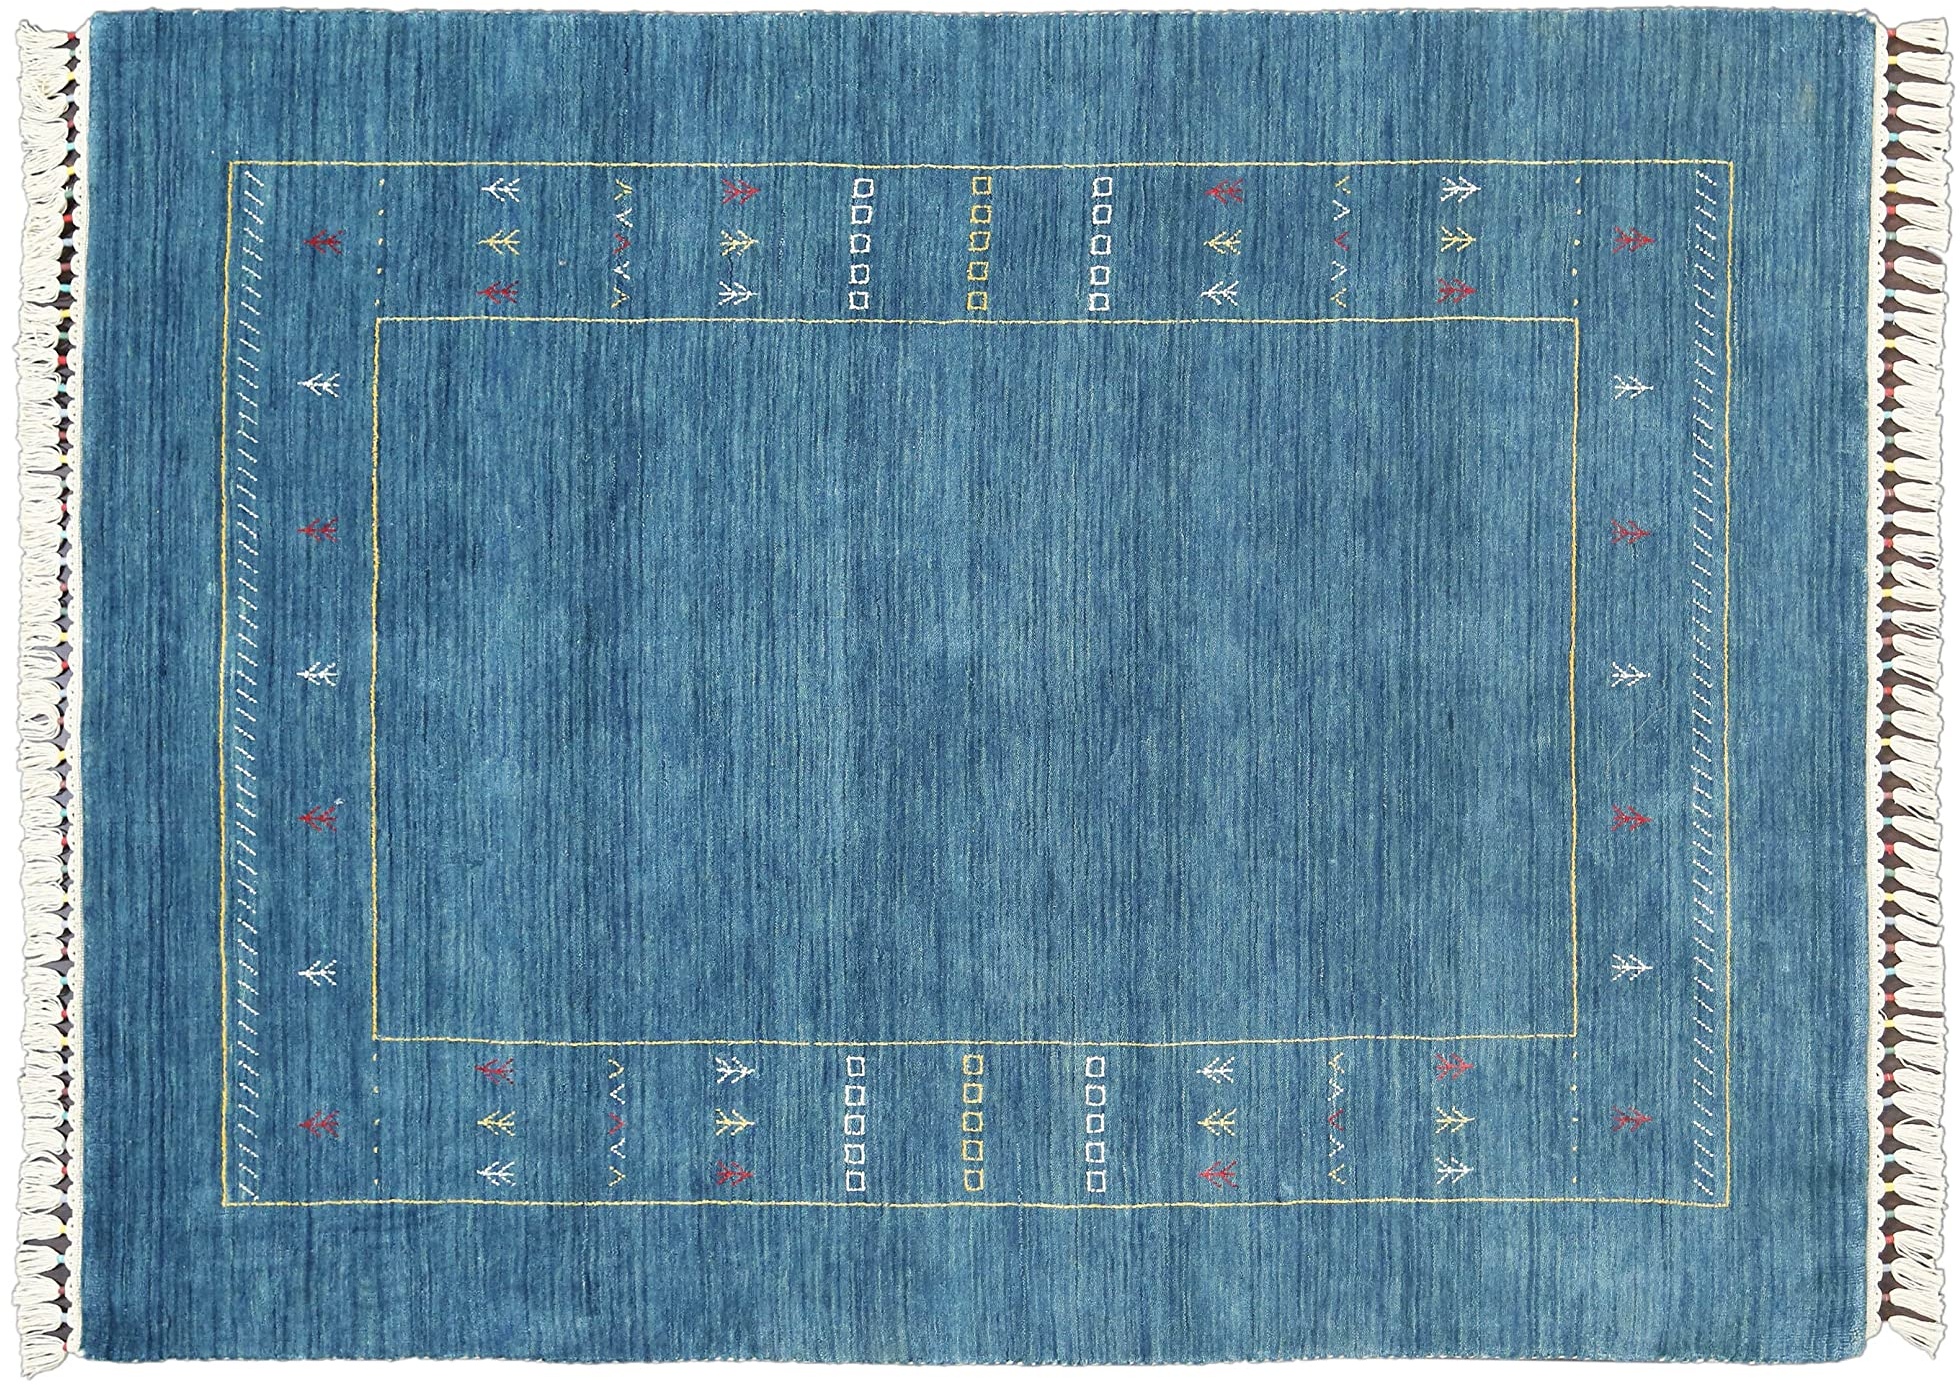 Moderner Teppich Lorry Buff GABBEH Home & Living 150 x 90 cm aus pflanzlicher Wolle in der Farbe Blau. Ideal für Jede Art von Umgebung: Küche, Badezimmer, Wohnzimmer, Schlafzimmer